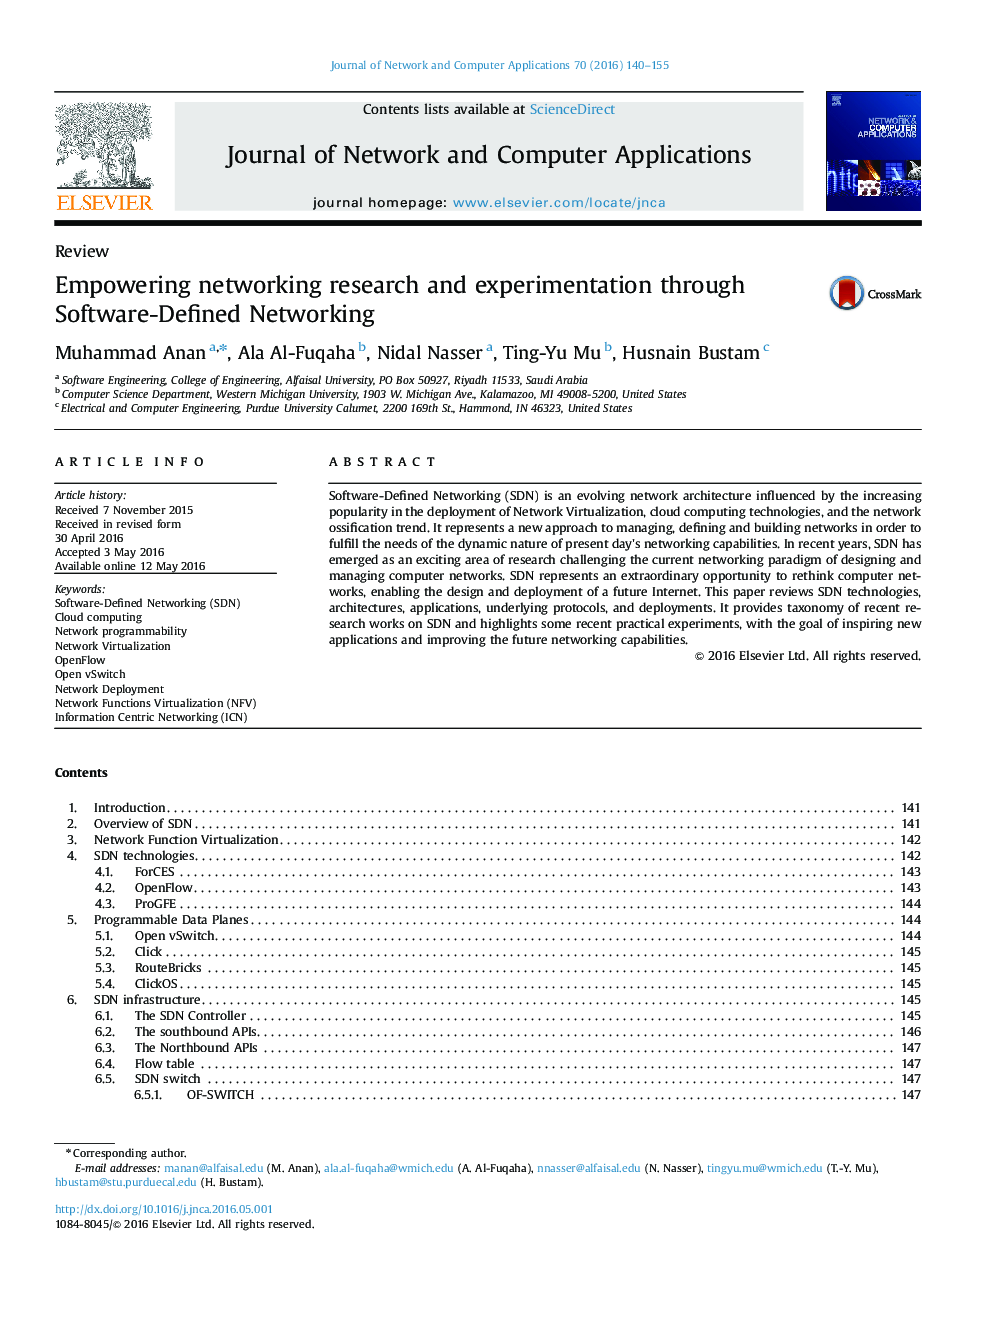 توانمندسازی تحقیق و آزمایش شبکه ها از طریق شبکه های تعریف شده توسط نرم افزار 